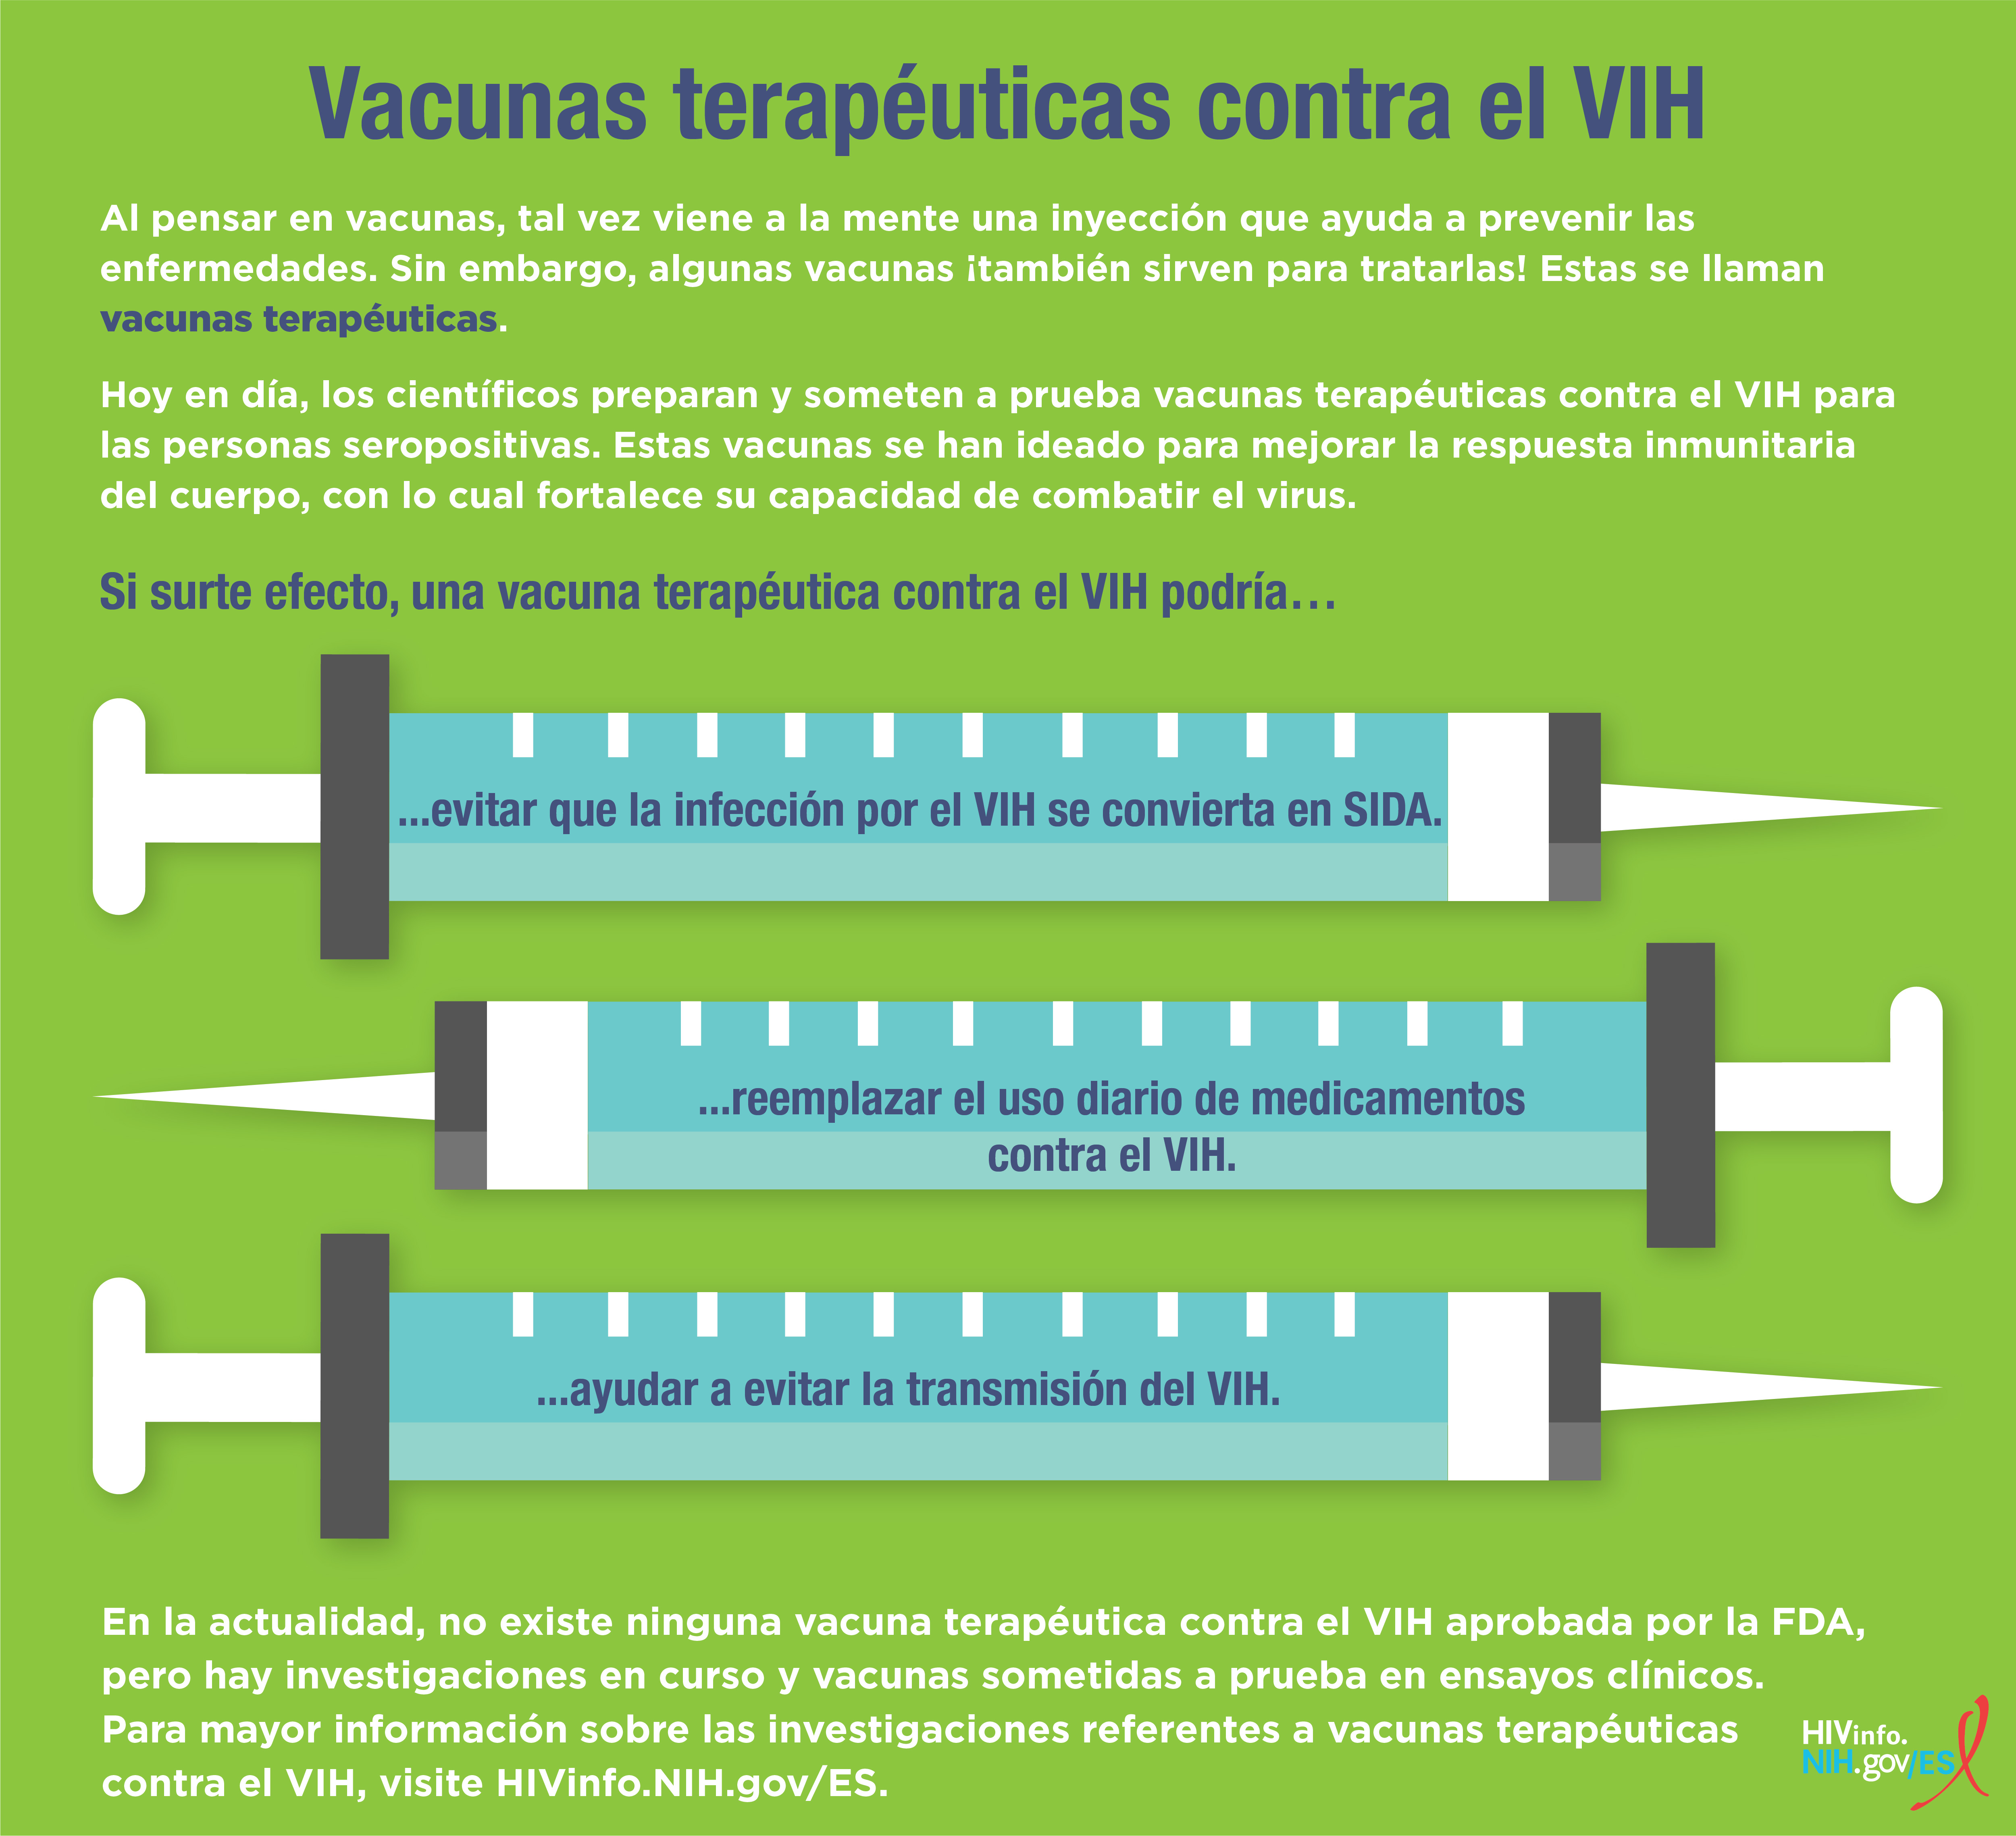 Bebé Implementar equipo Vacunas terapéuticas contra el VIH | NIH